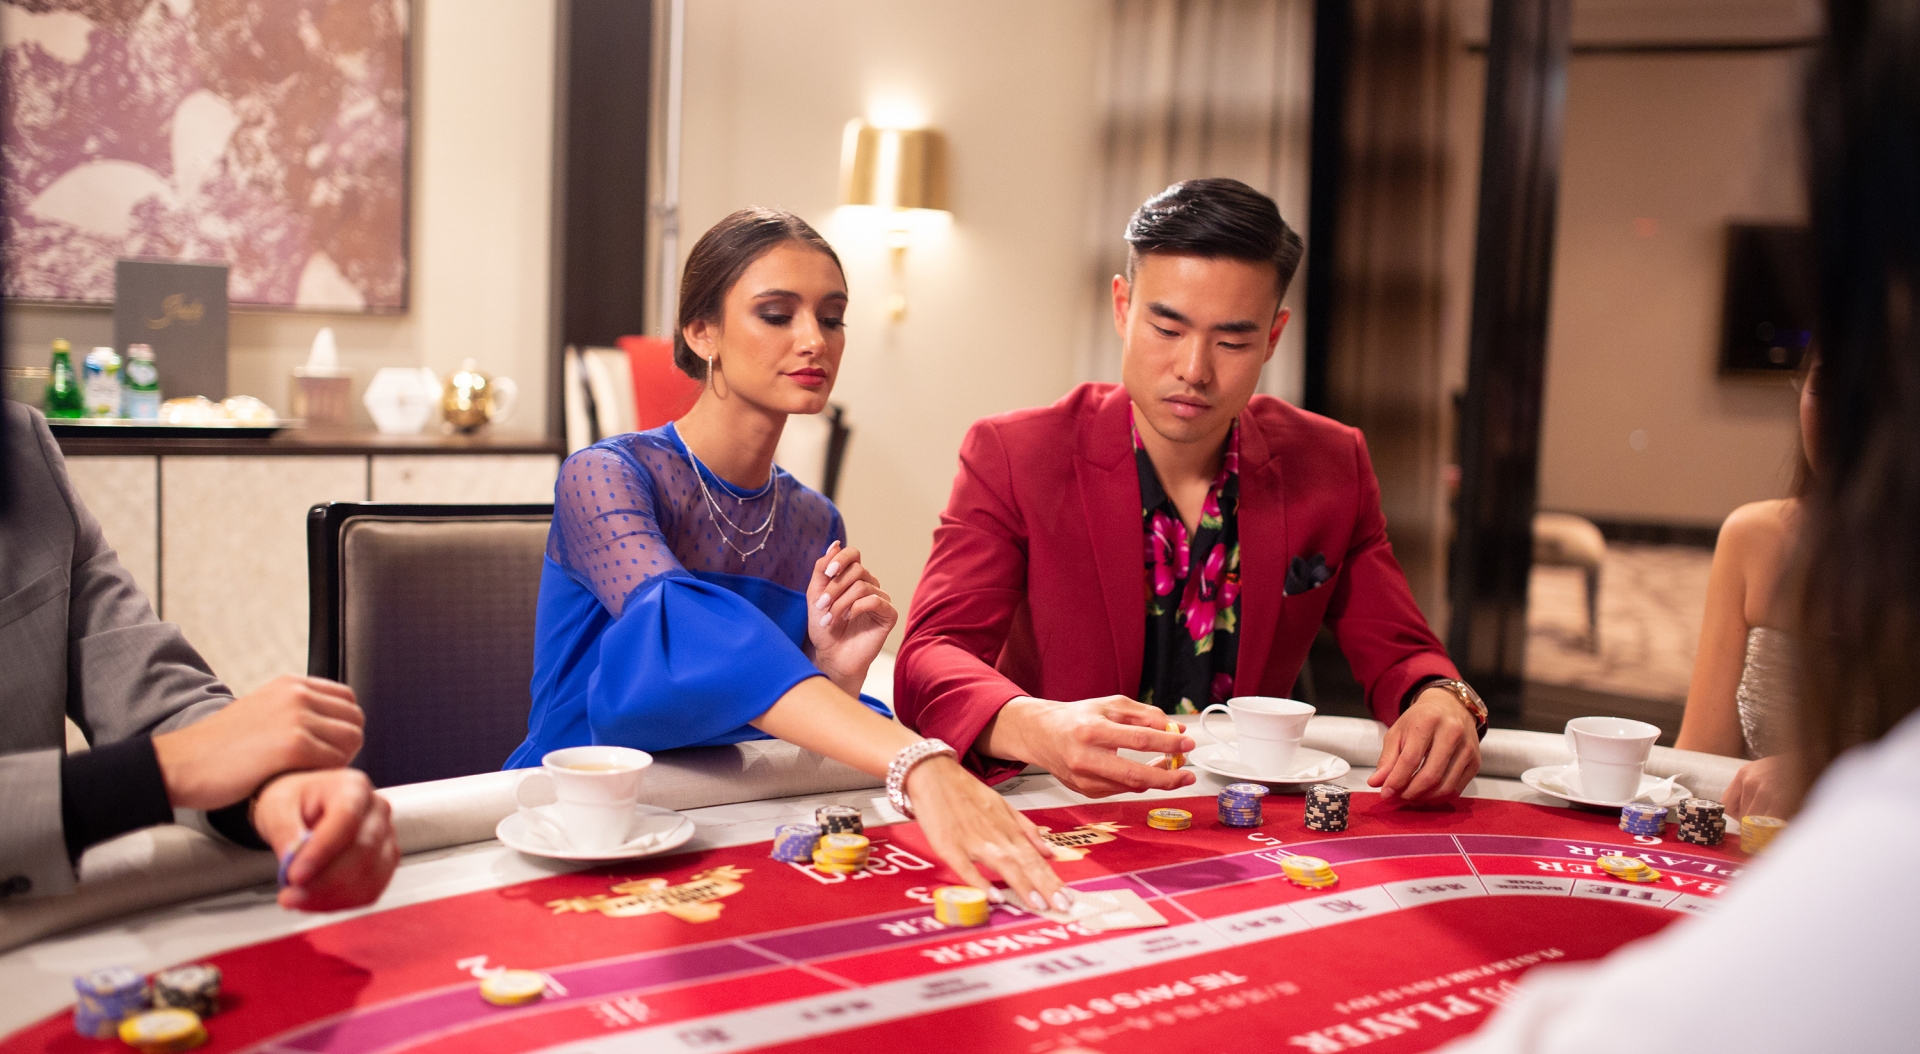 Grand villa casino vancouver poker room